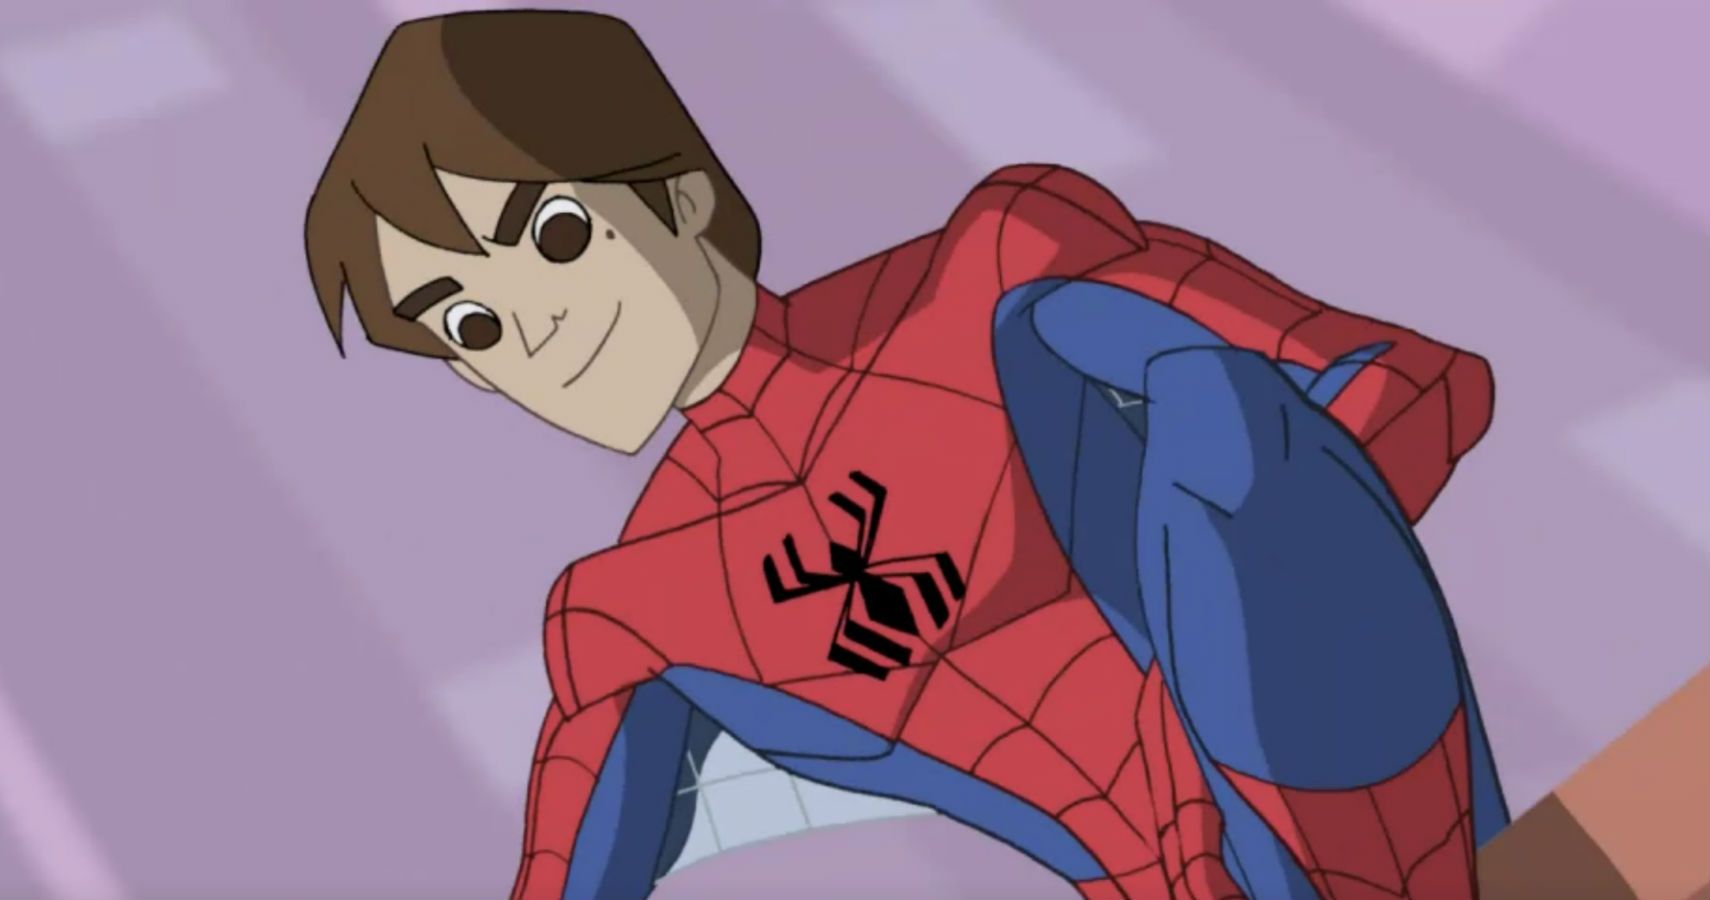 Spectacular Spider Man 10 Best Episodes According To Imdb